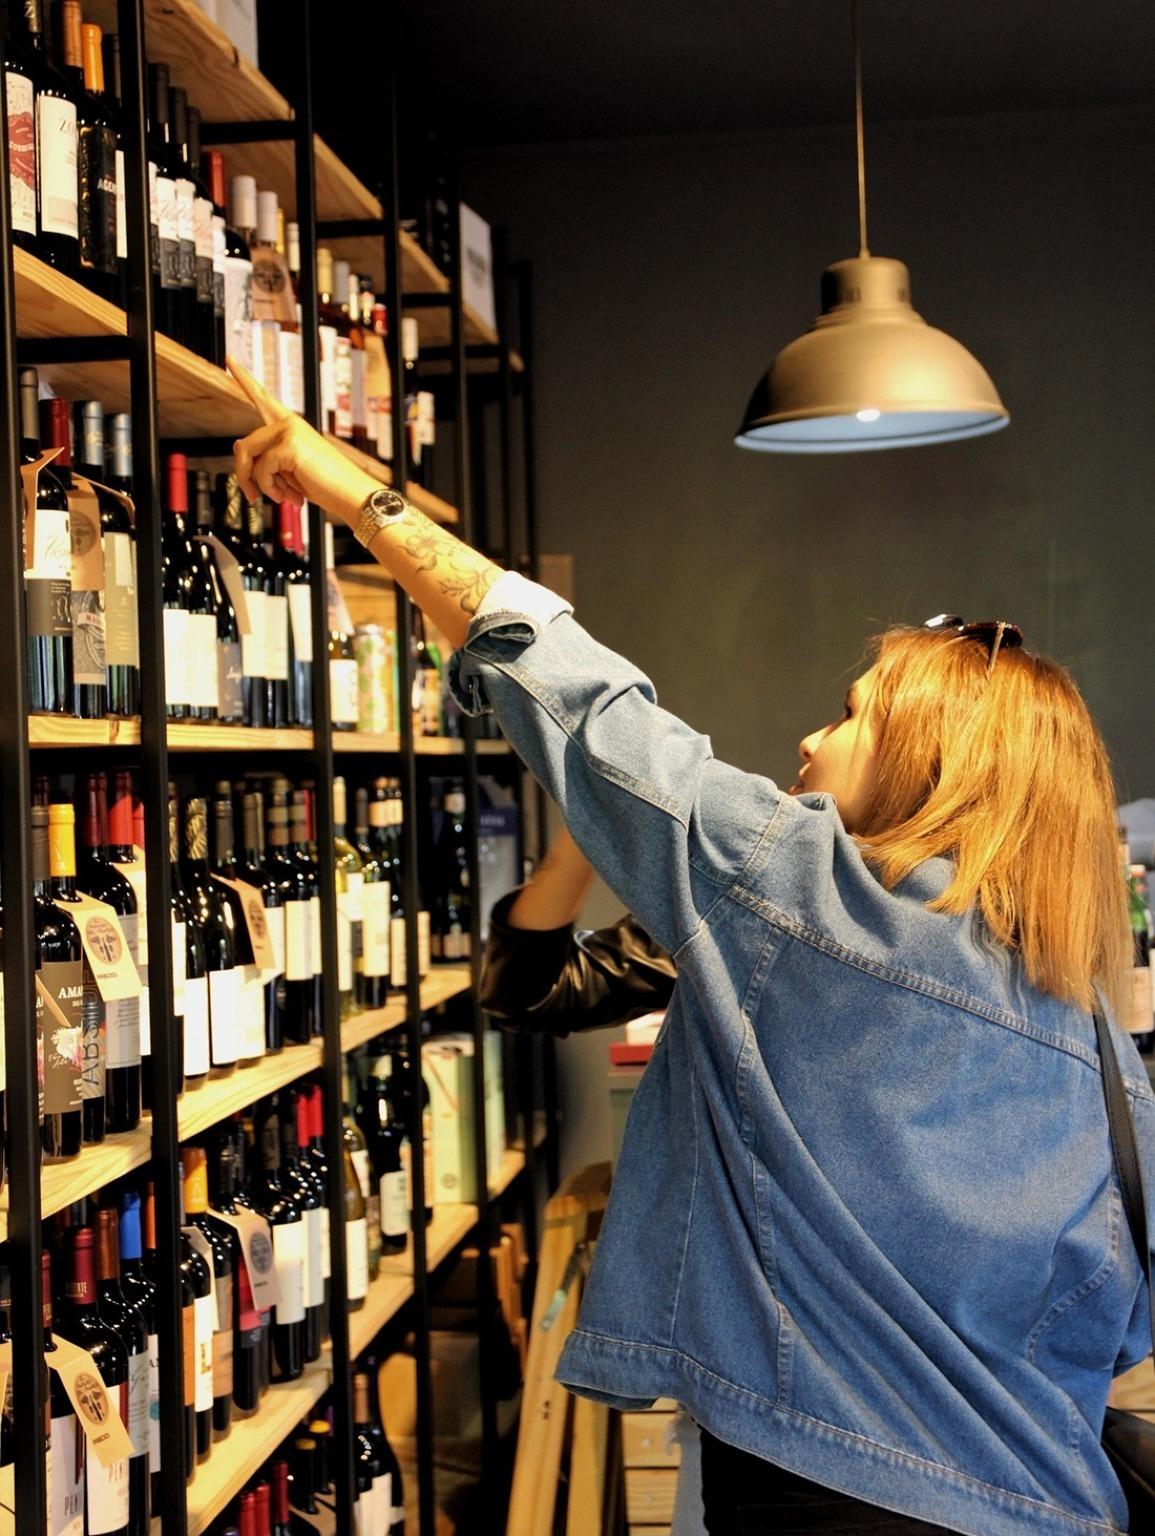 Una mujer explora una encantadora tienda de vinos de Oporto, inmersa en la rica tradición de sabores locales y selecciones únicas